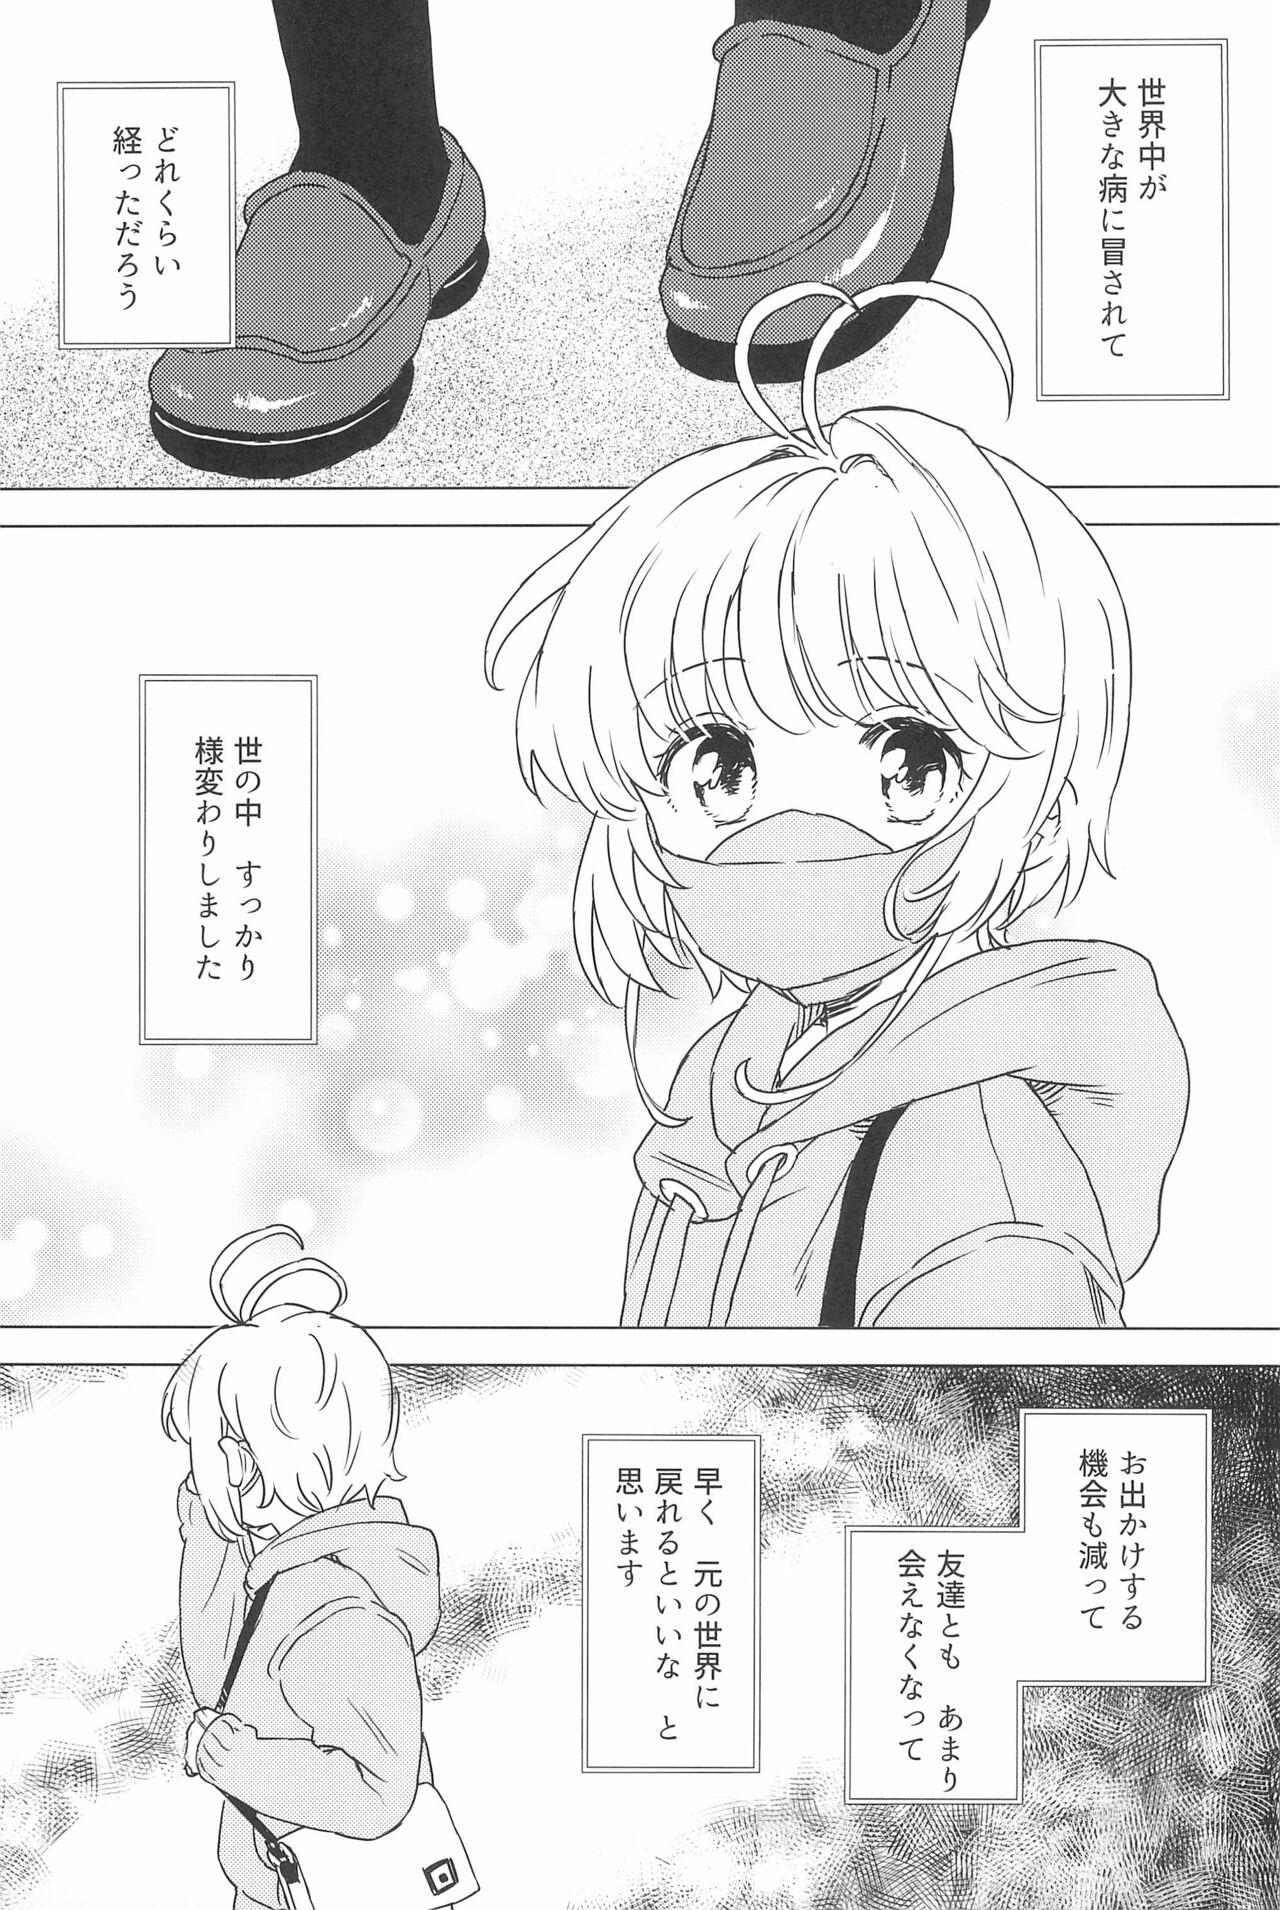 Bra Sakura to Syaoran no Ouchi Date - Cardcaptor sakura Sixtynine - Page 5